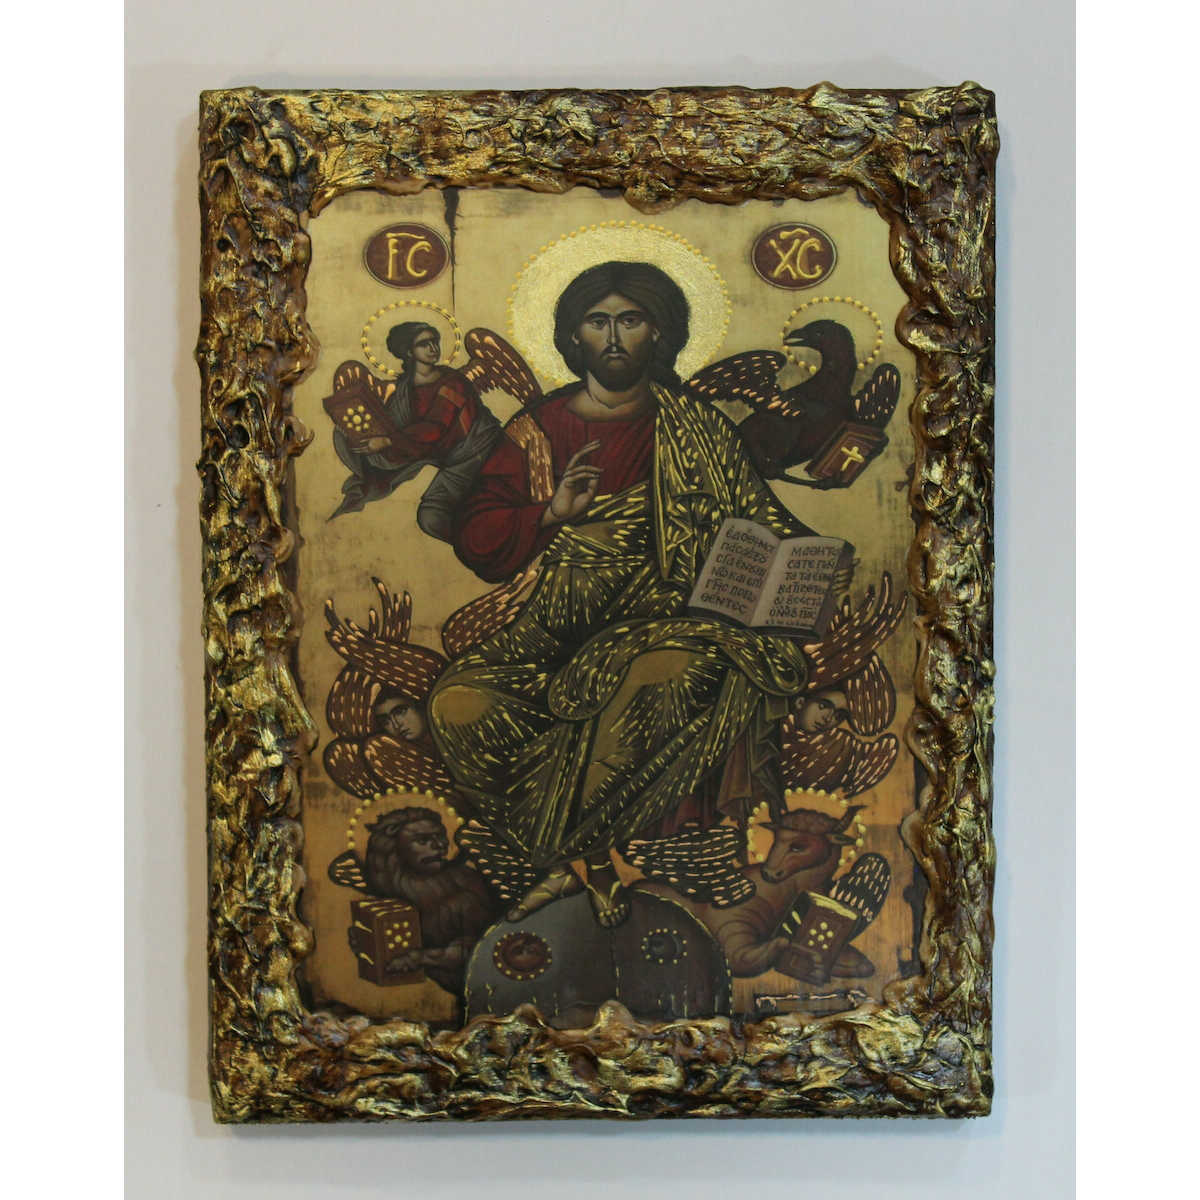 Εικόνα Χριστού με περίγραμμα πάστας διαστάσεις 25×20 ξύλινη